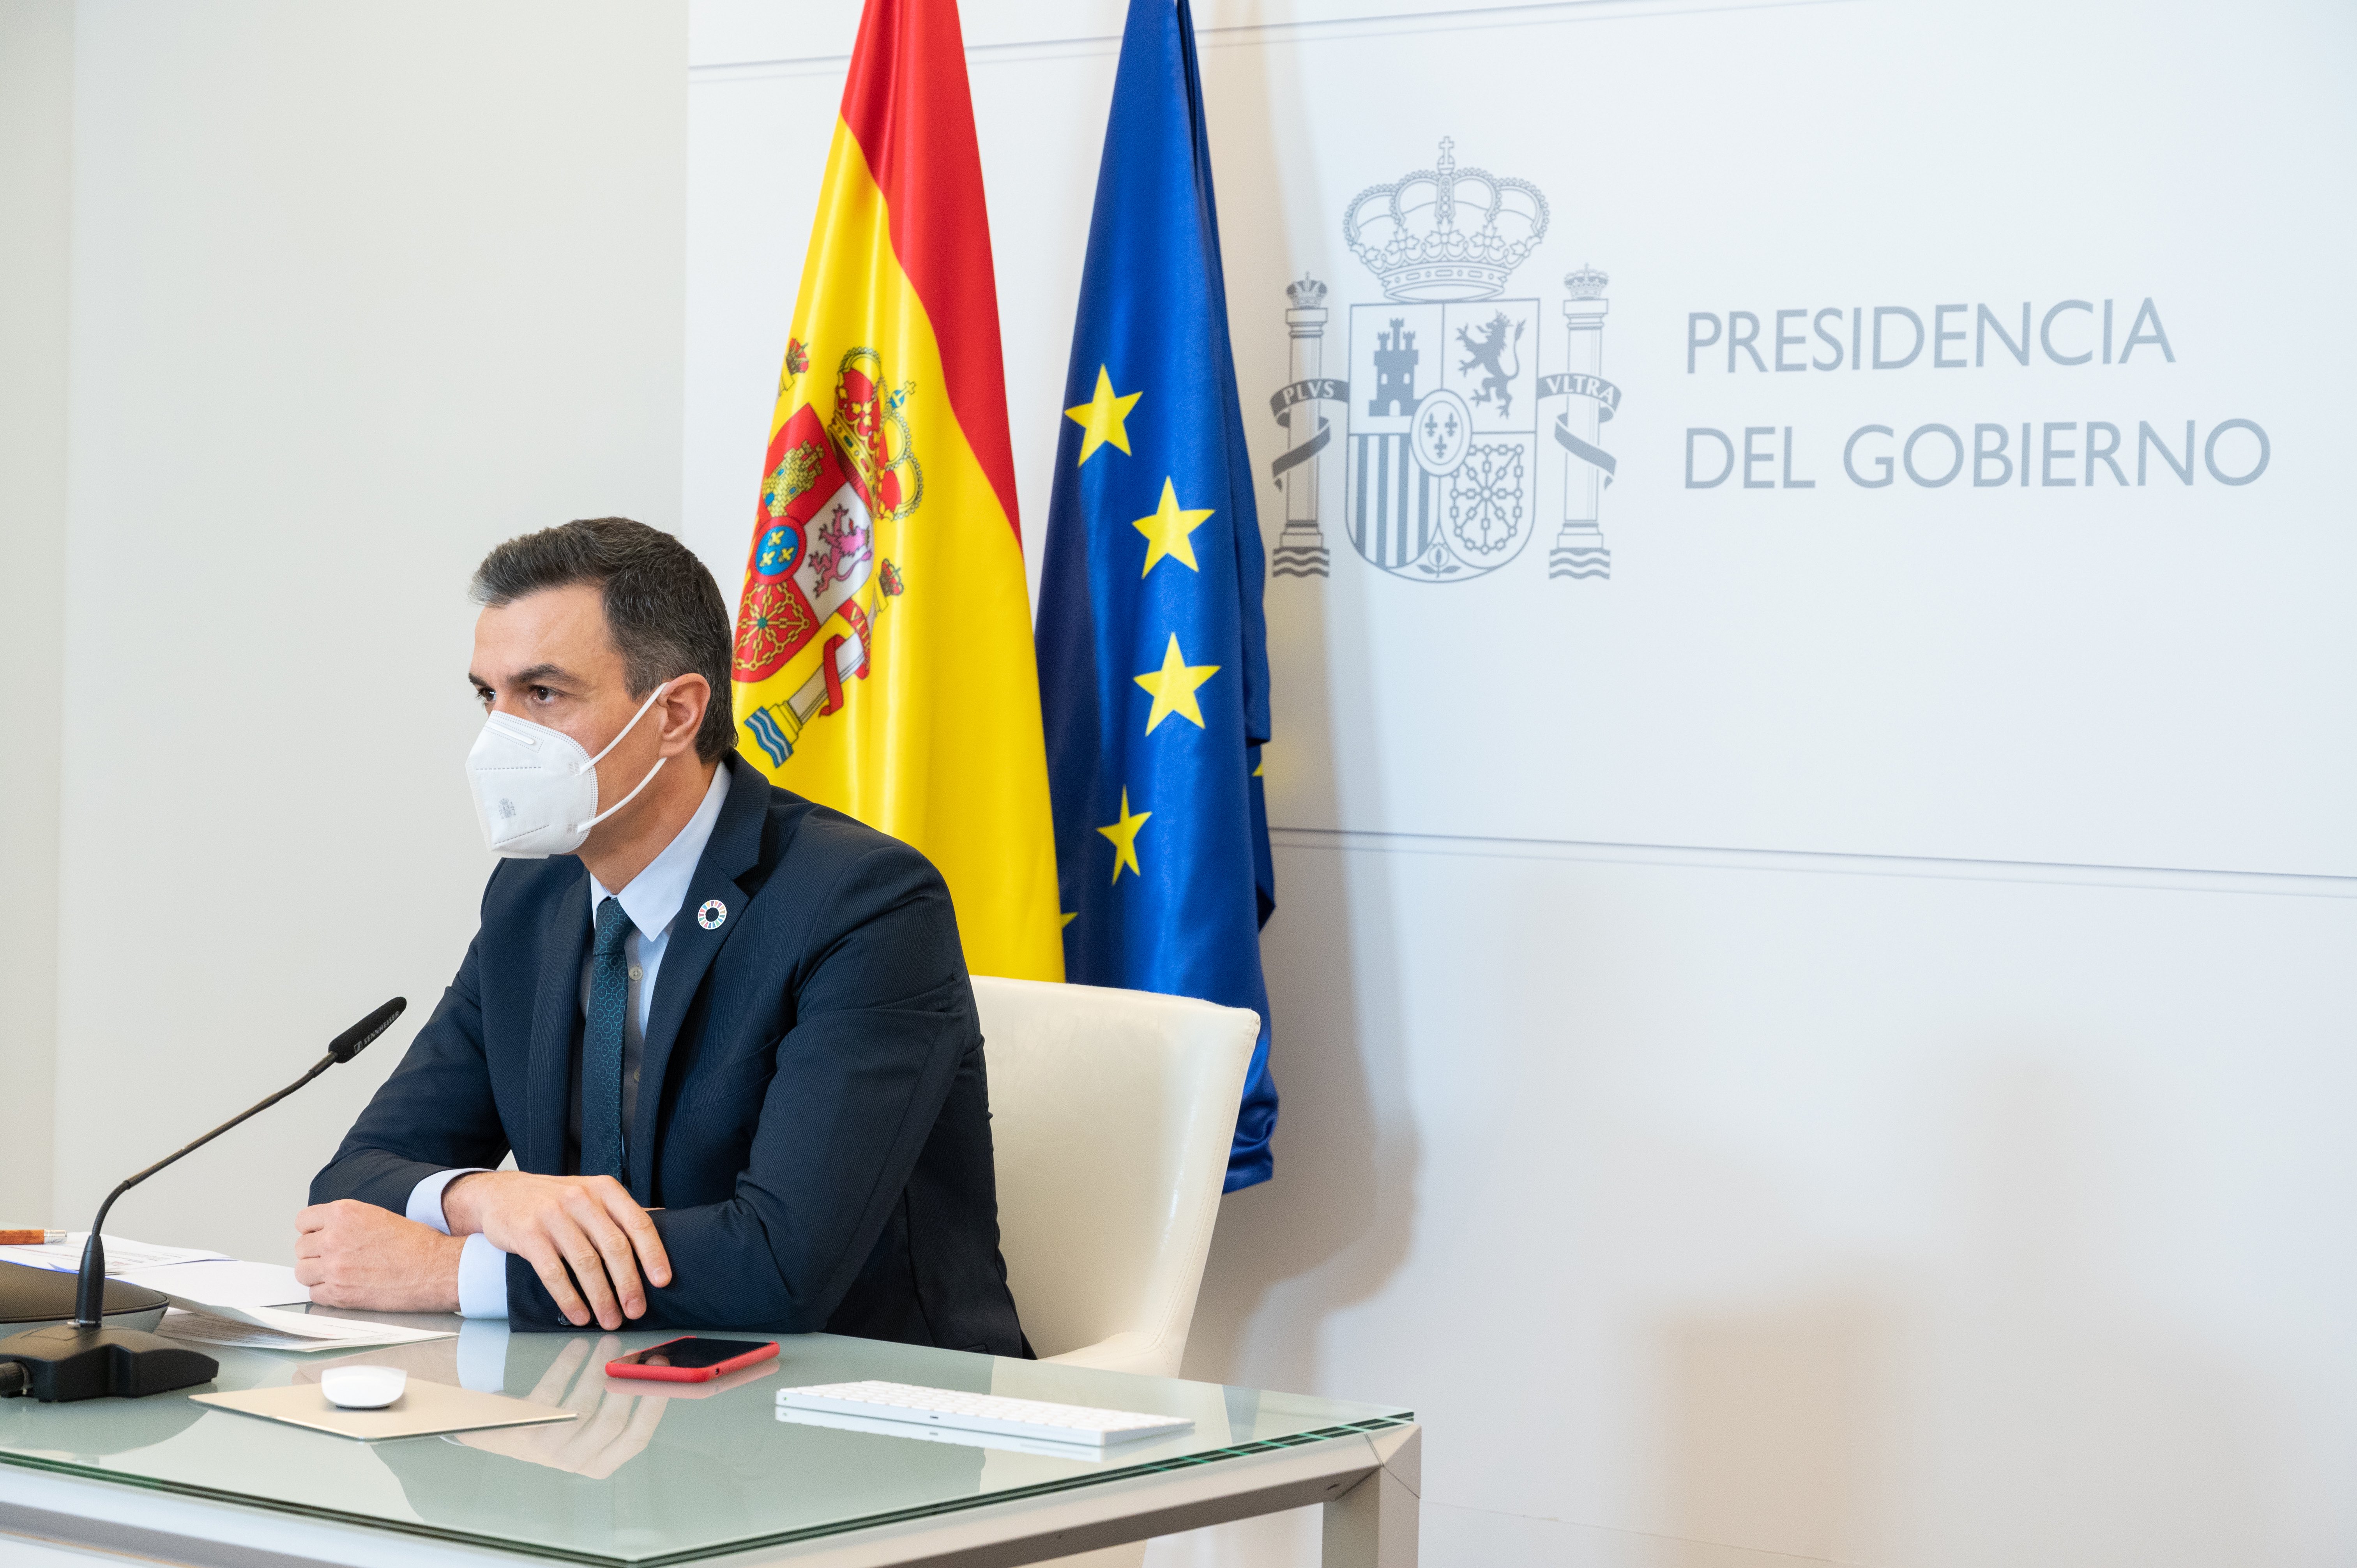 Spanish Prime Minister Pedro Sanchez participates in the virtual World Economic Forum (WEF) Davos Agenda meeting in Madrid, Spain